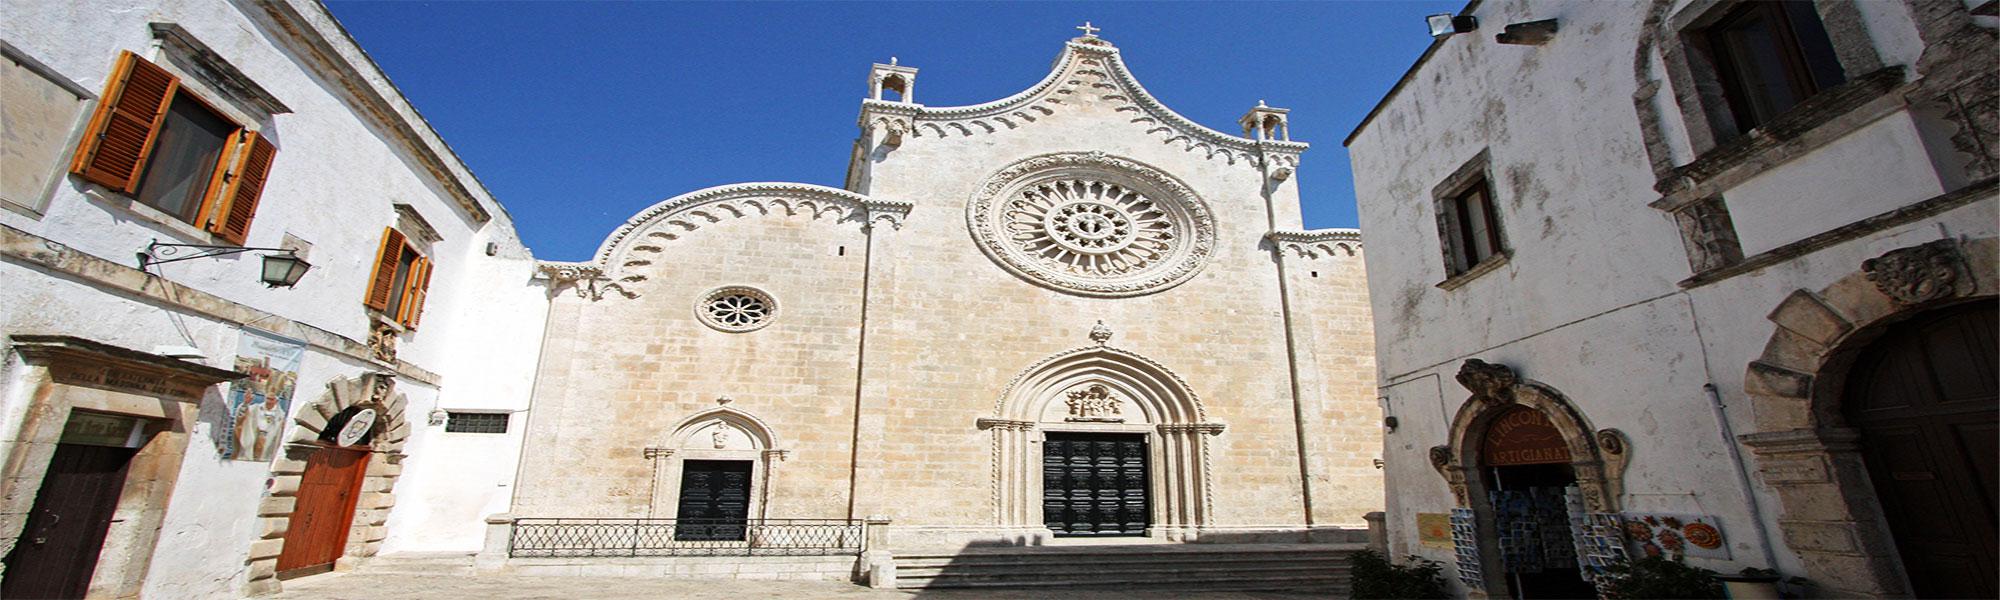 Itineraries Apulia: Alberobello, Ostuni, Cisternino, Martina franca 3